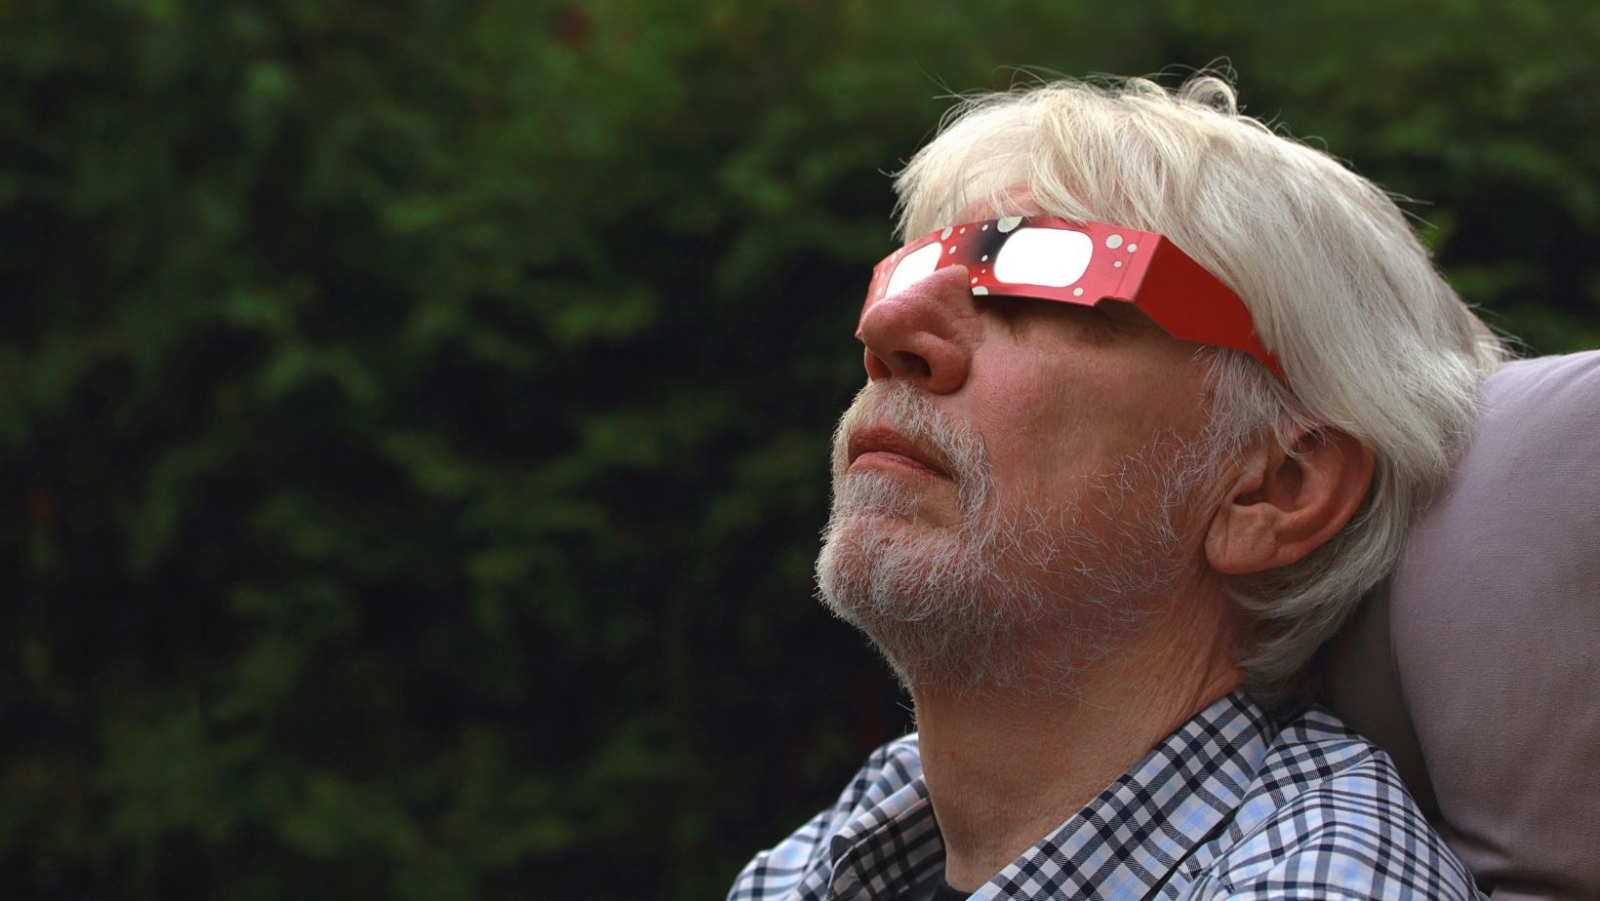 Eclipse solar 2023: ¿Dónde comprar los lentes para verlo de forma segura?